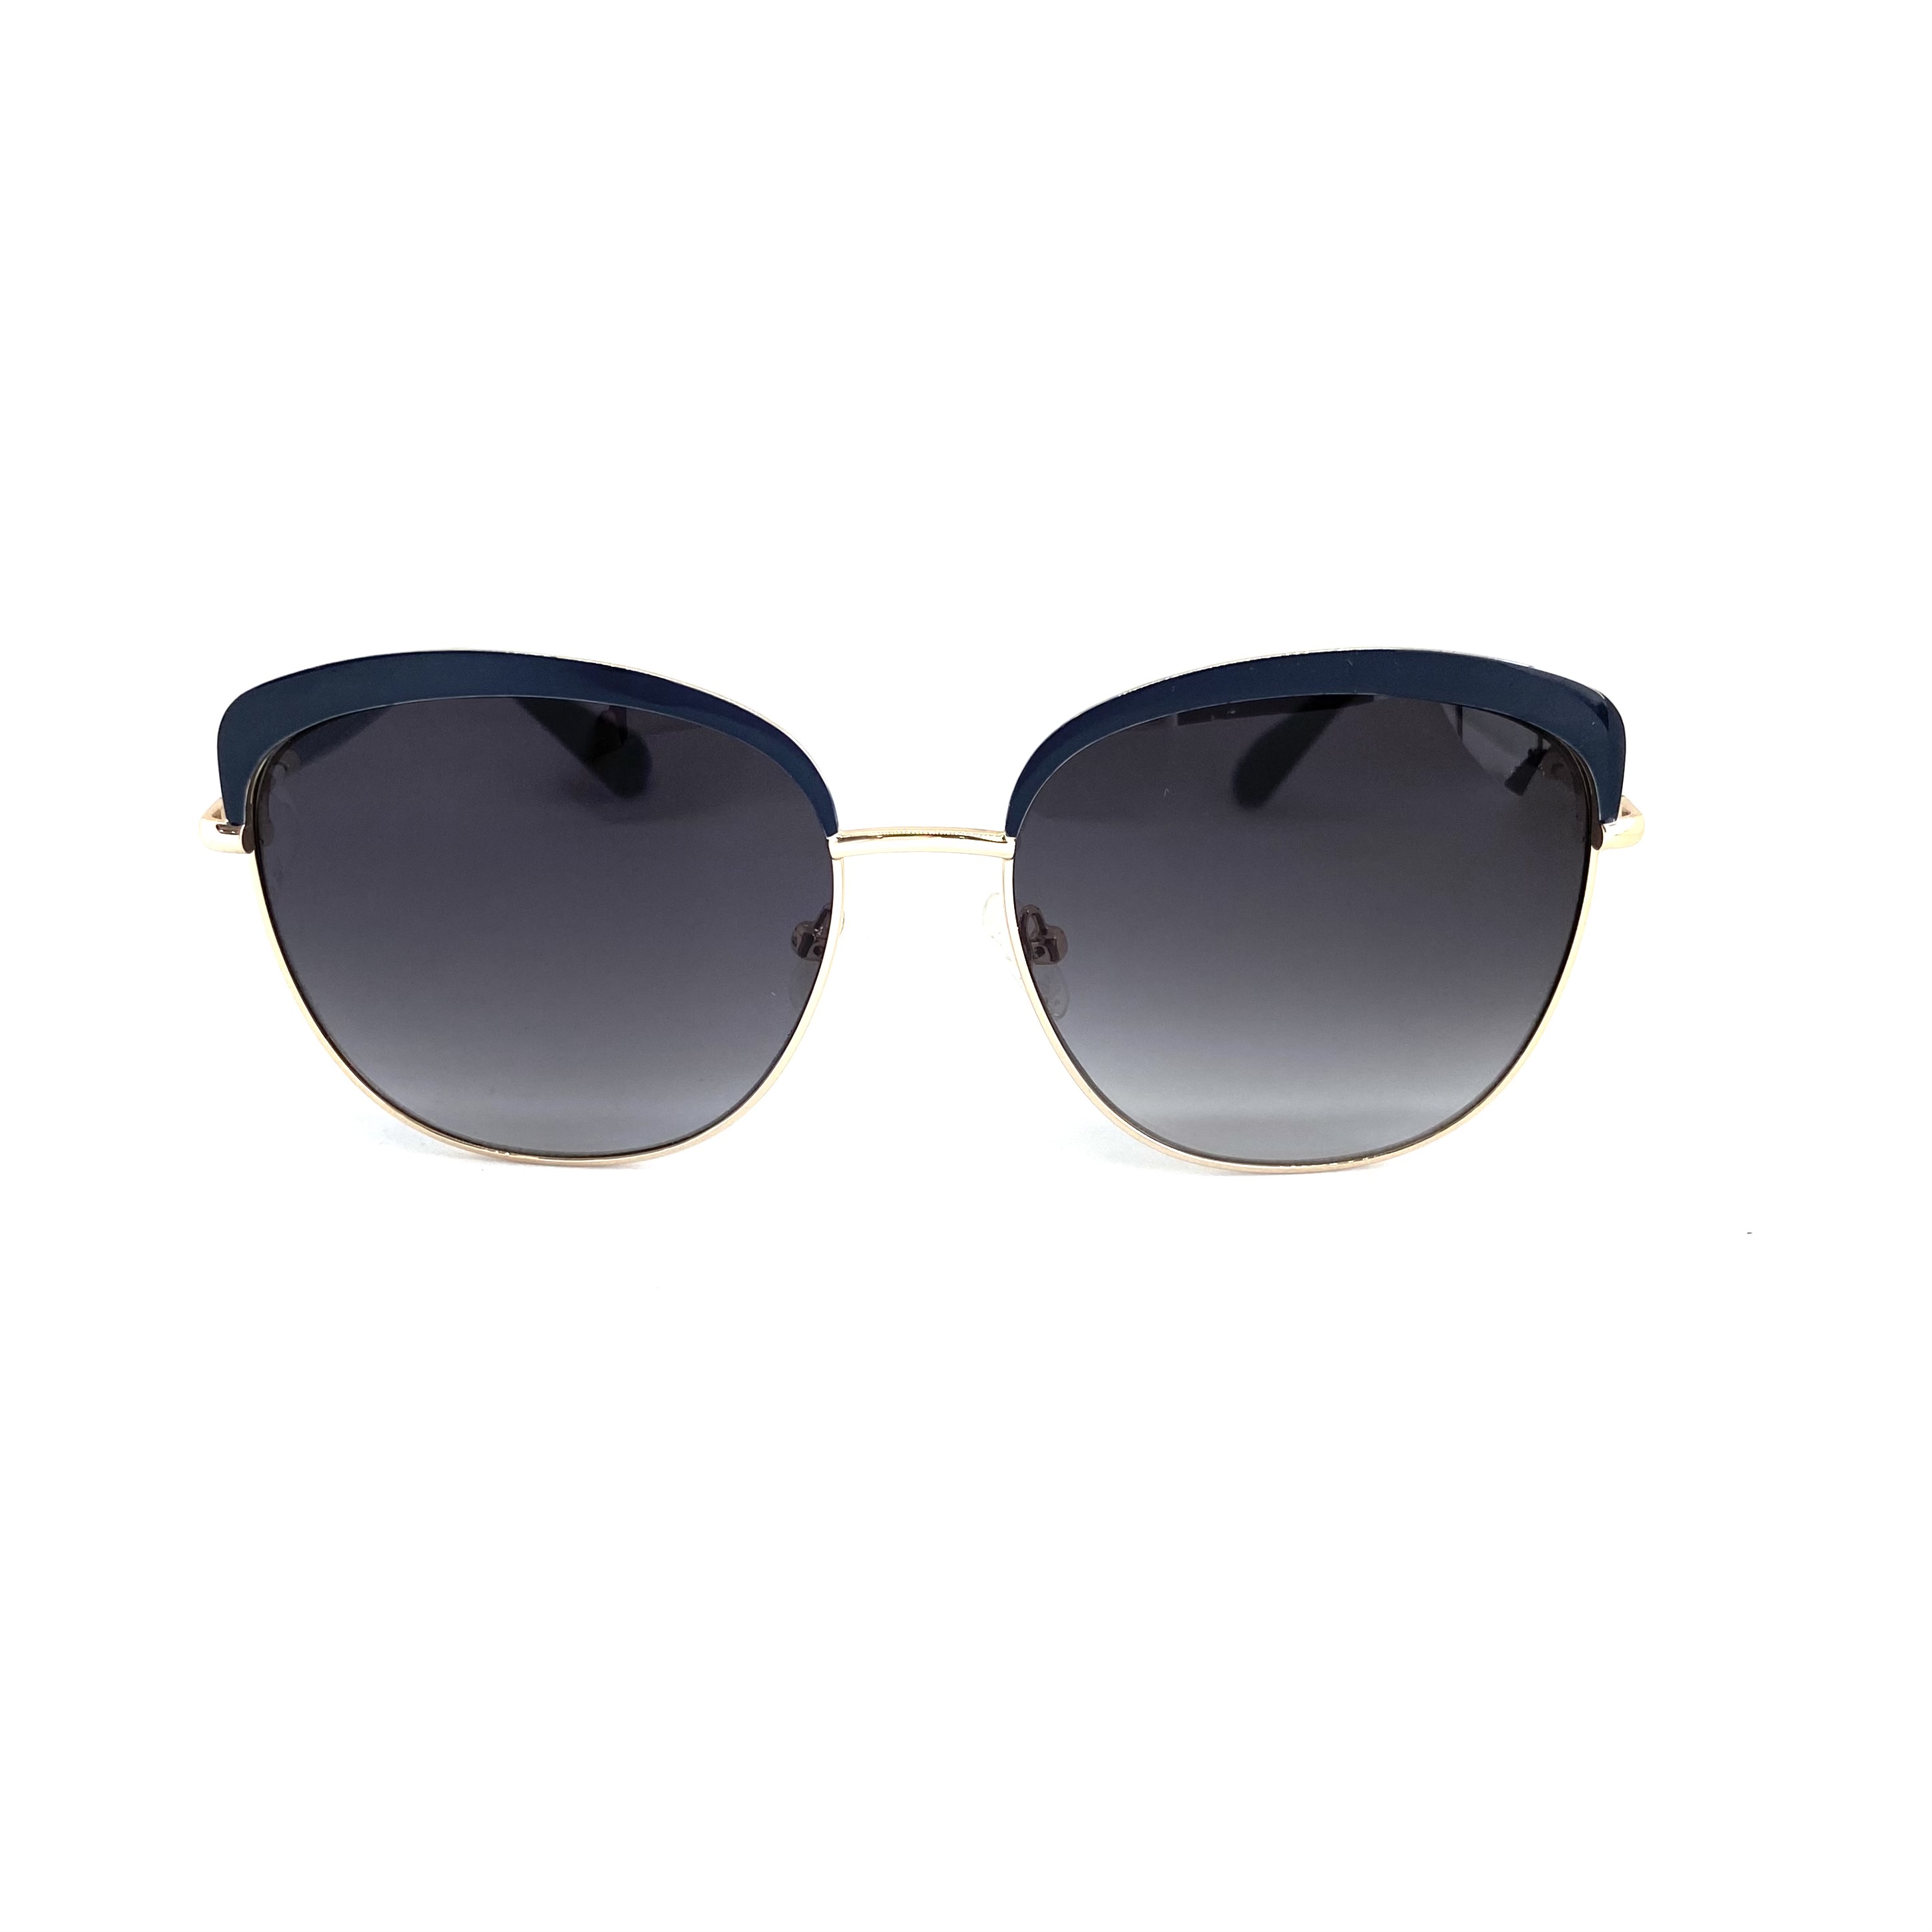 Солнцезащитные очки Enni Marco модель IS 11-537